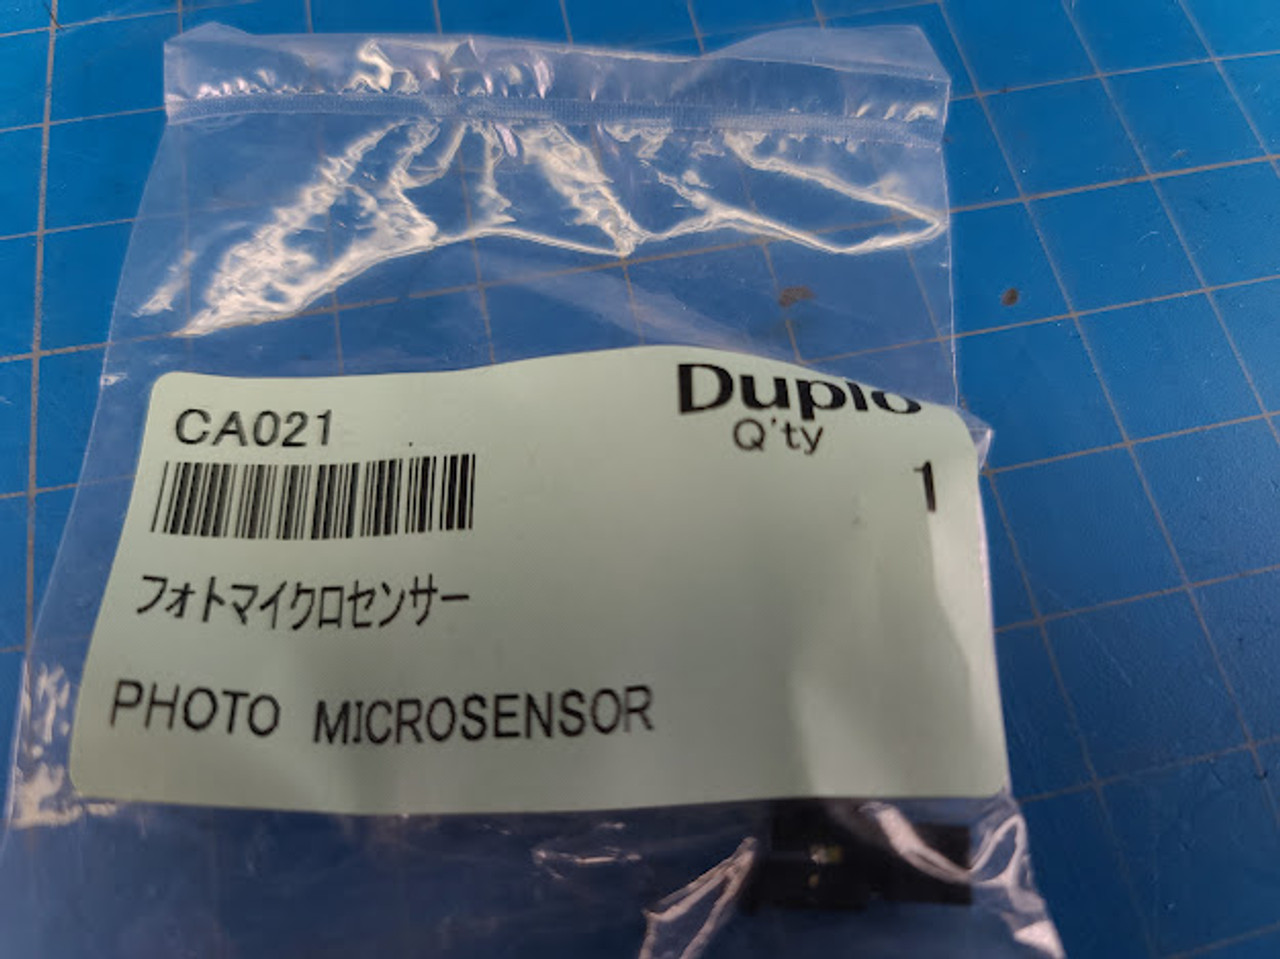 Duplo DC-745 Photosensor CA021